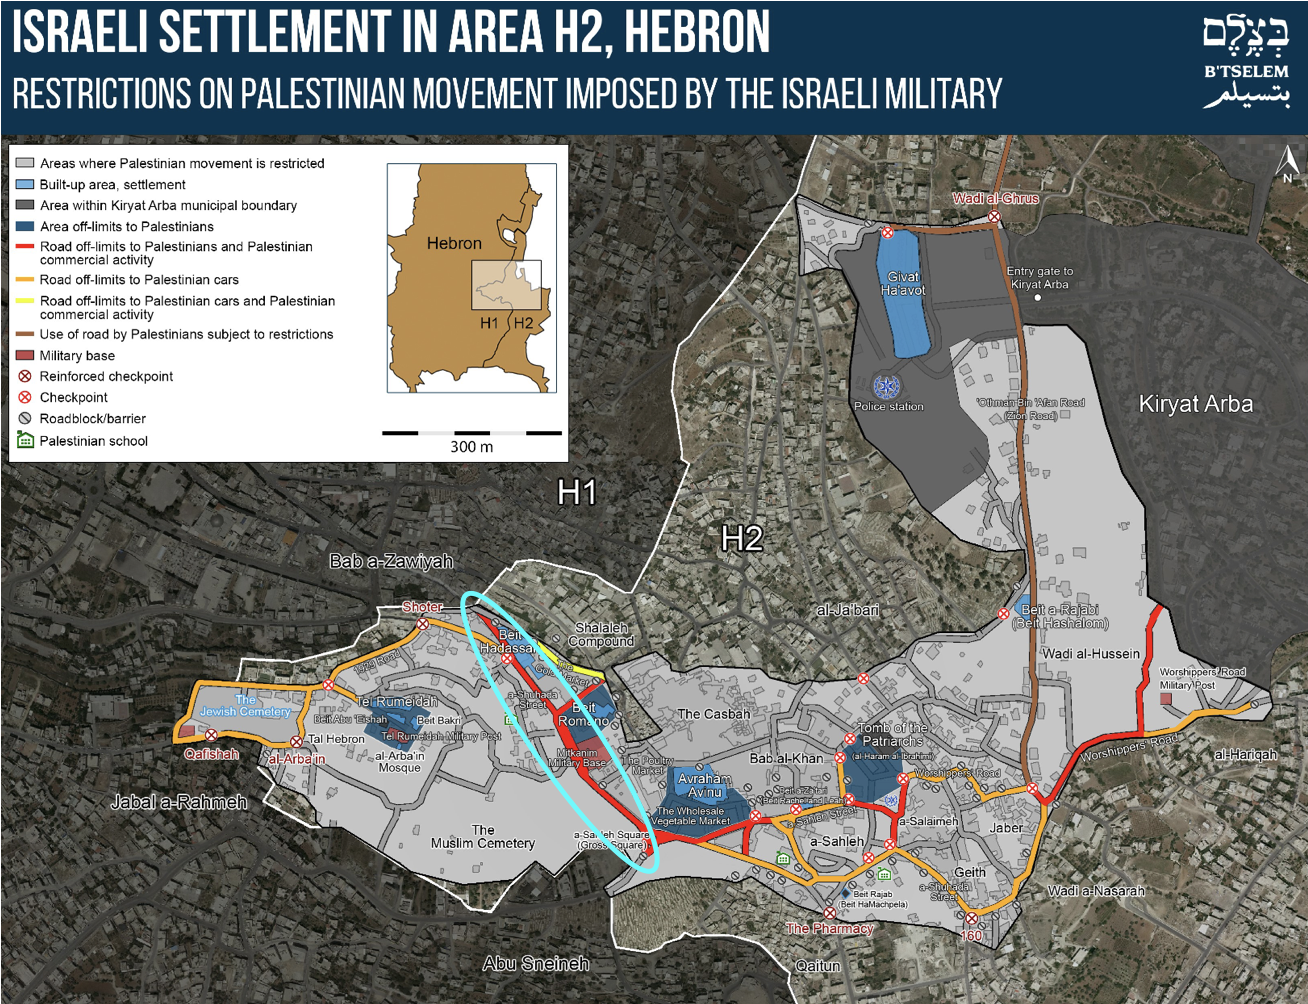 Hebron geteilt. Karte: B'tselem